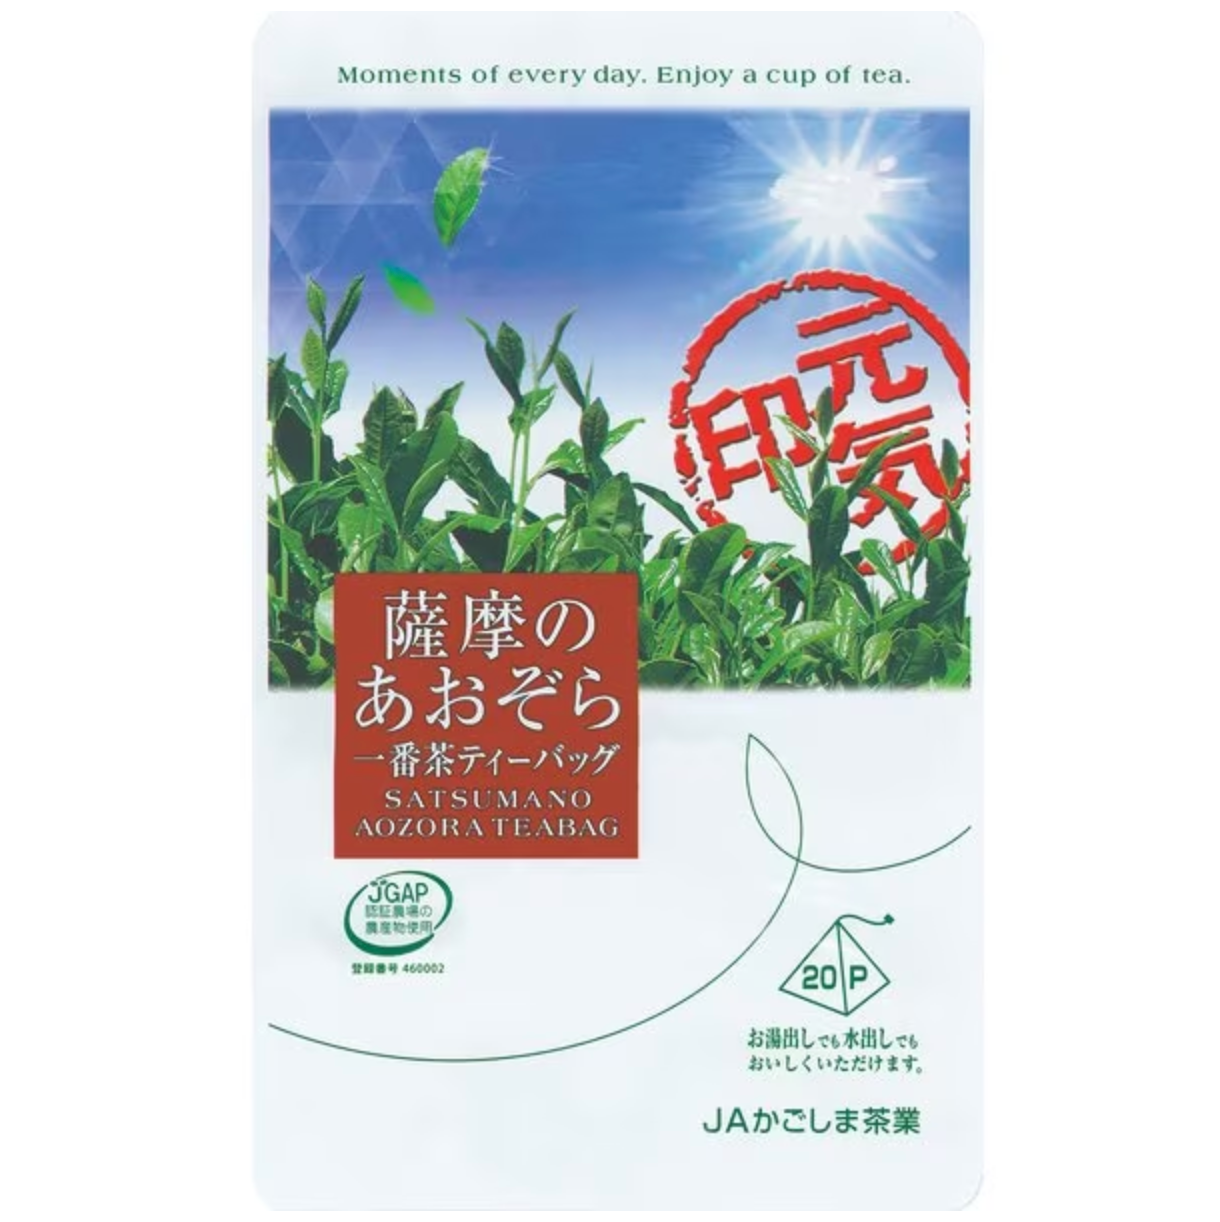 JA Kagoshima Tea Industry Satsuma Aozora Tea Bag 60g (3g x 20P)